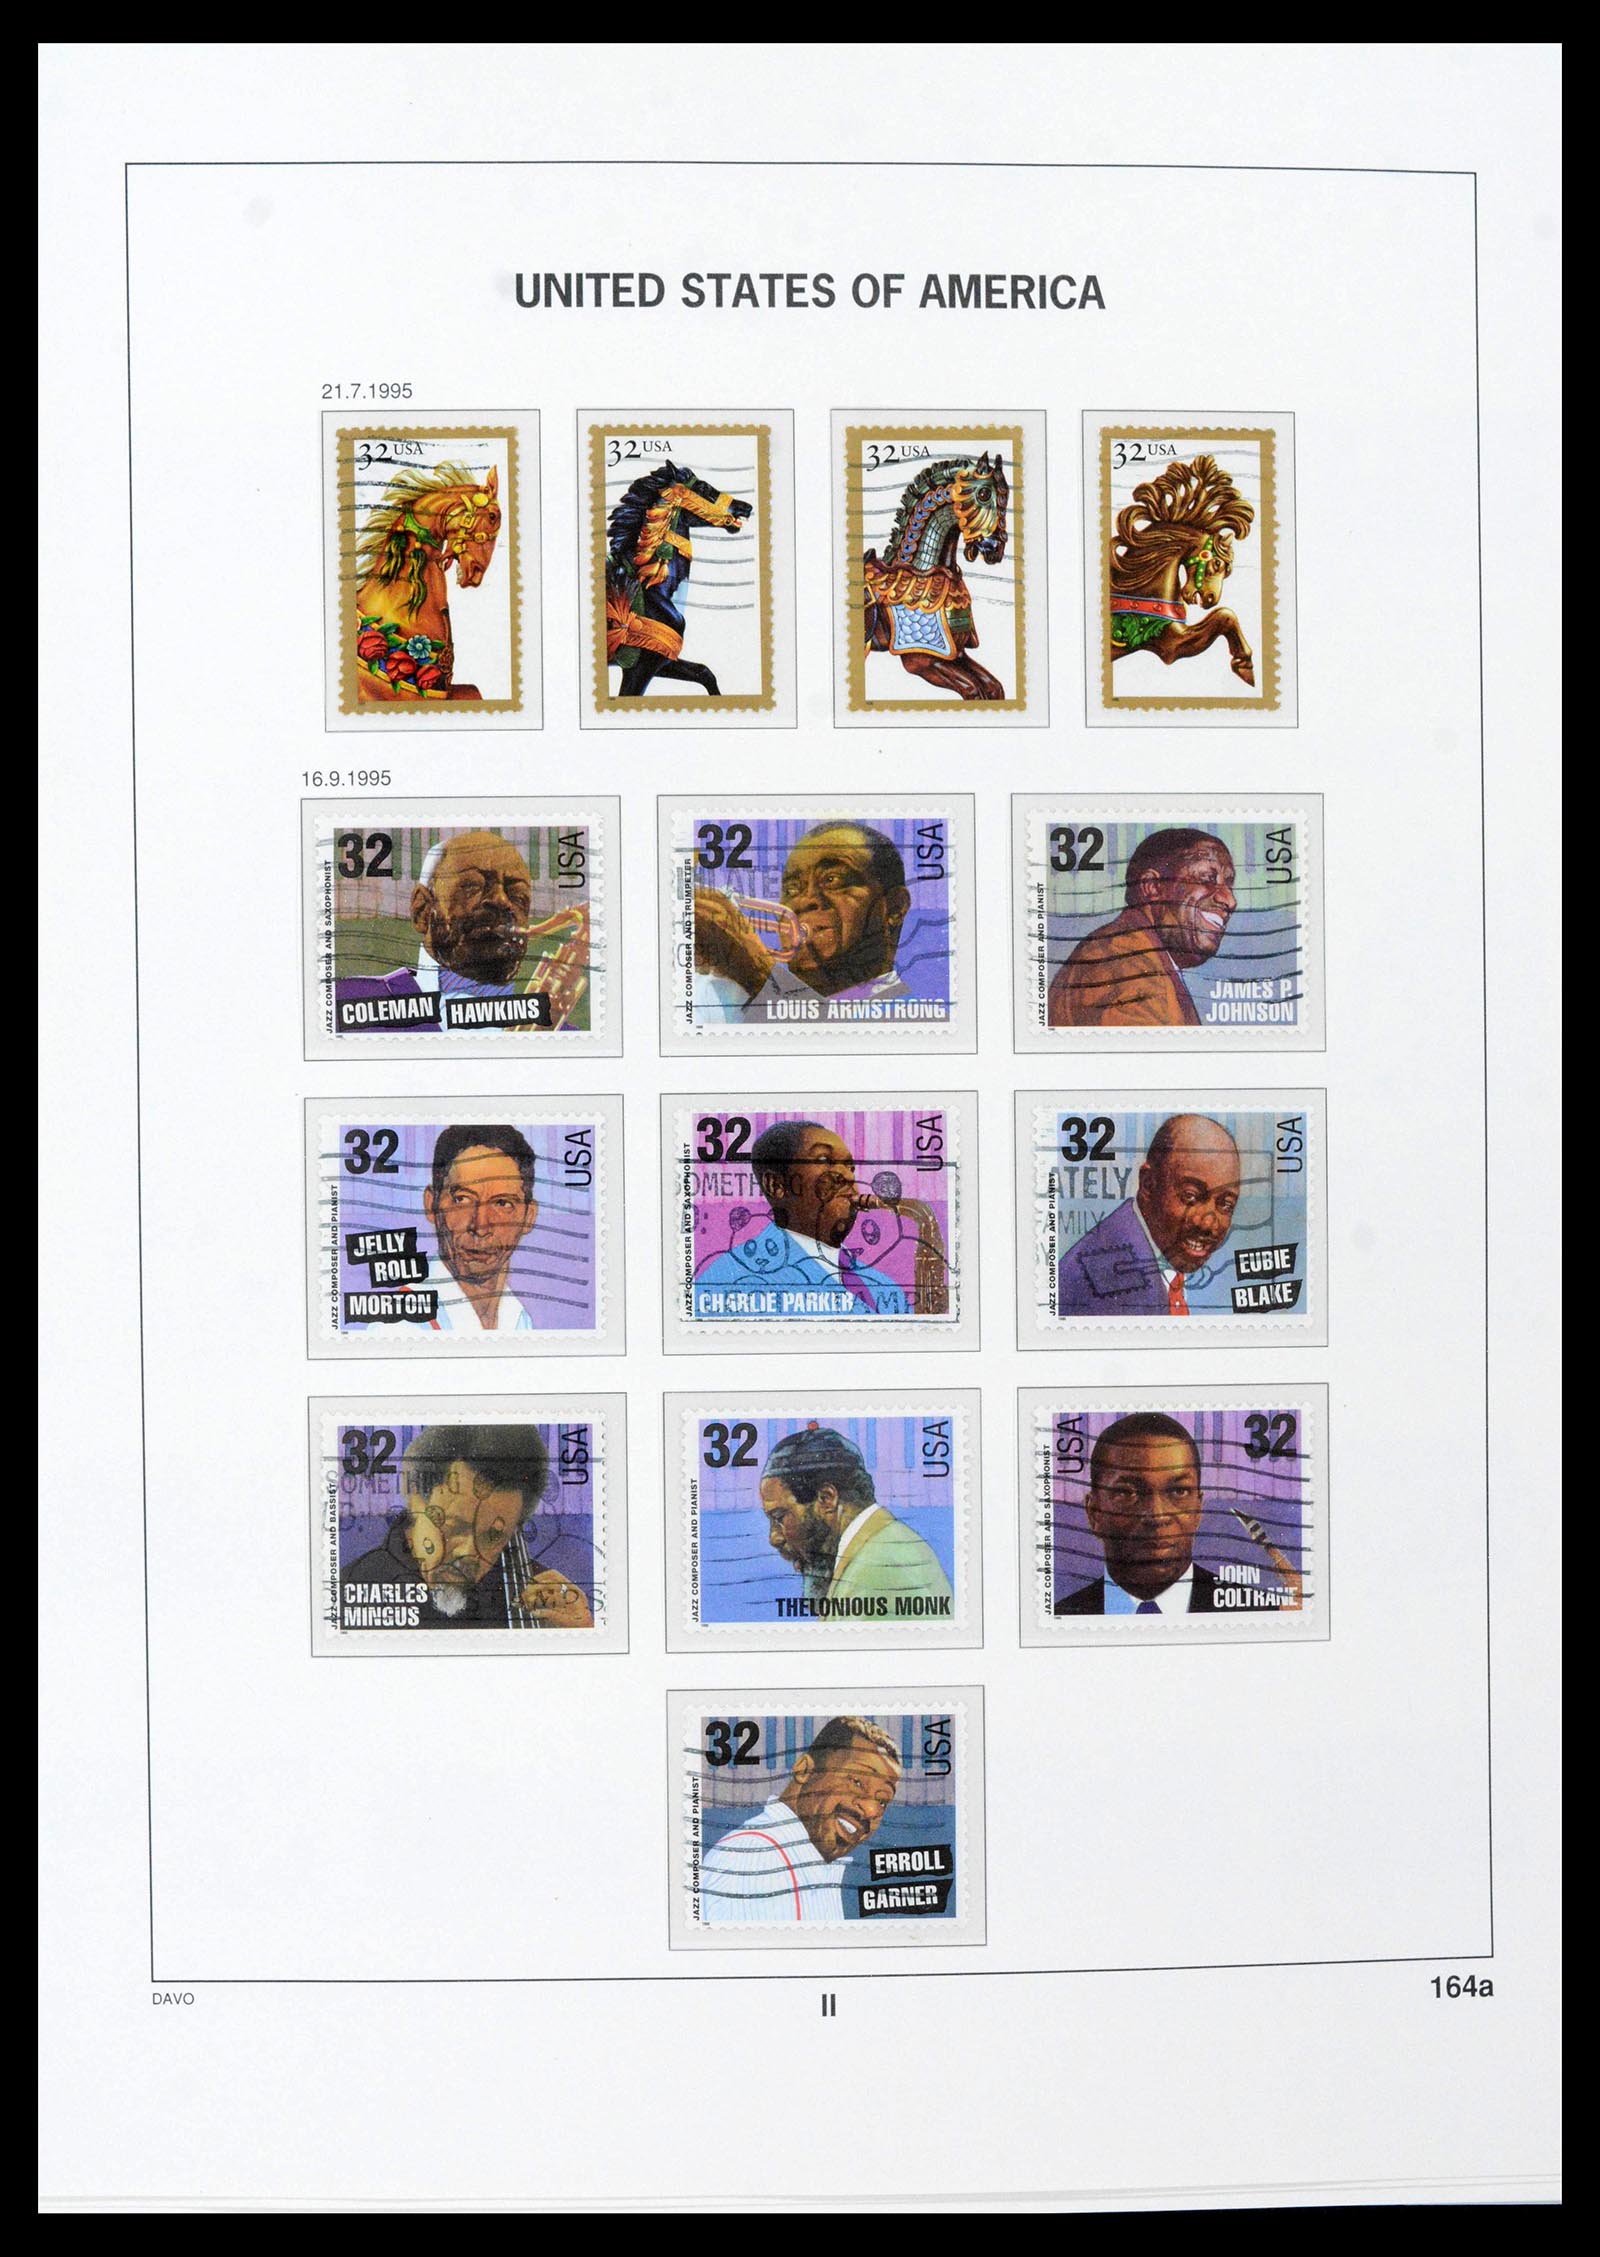 39349 0060 - Stamp collection 39349 USA 1989-2021!